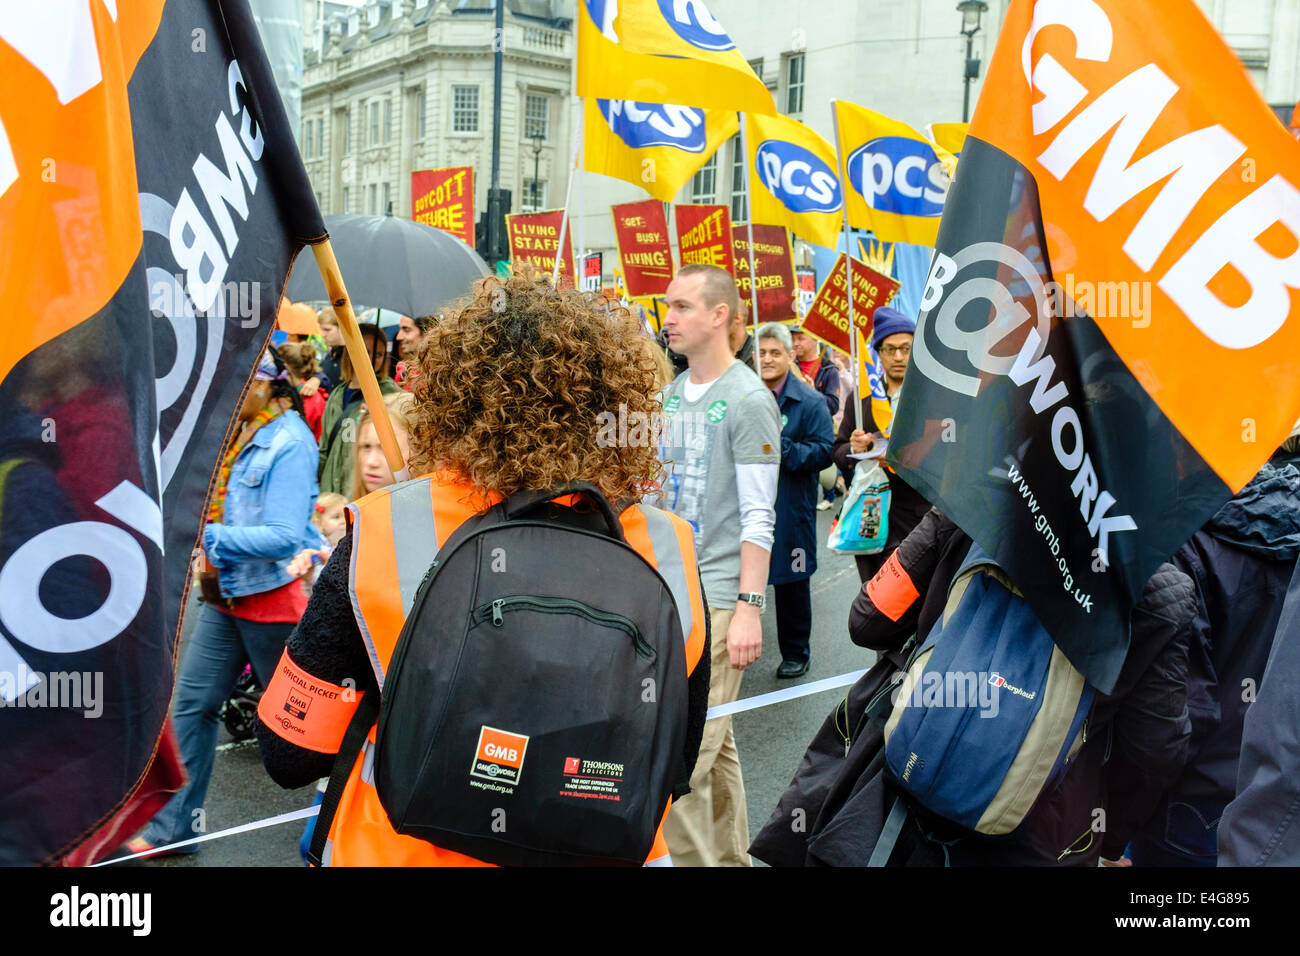 Londra, Regno Unito. 10 Luglio, 2014. I lavoratori del settore pubblico sciopero". I membri dell'Unione GMB mostrano il supporto per il loro settore pubblico i colleghi durante il mese di marzo nella zona centrale di Londra. Credito: mark phillips/Alamy Live News Foto Stock